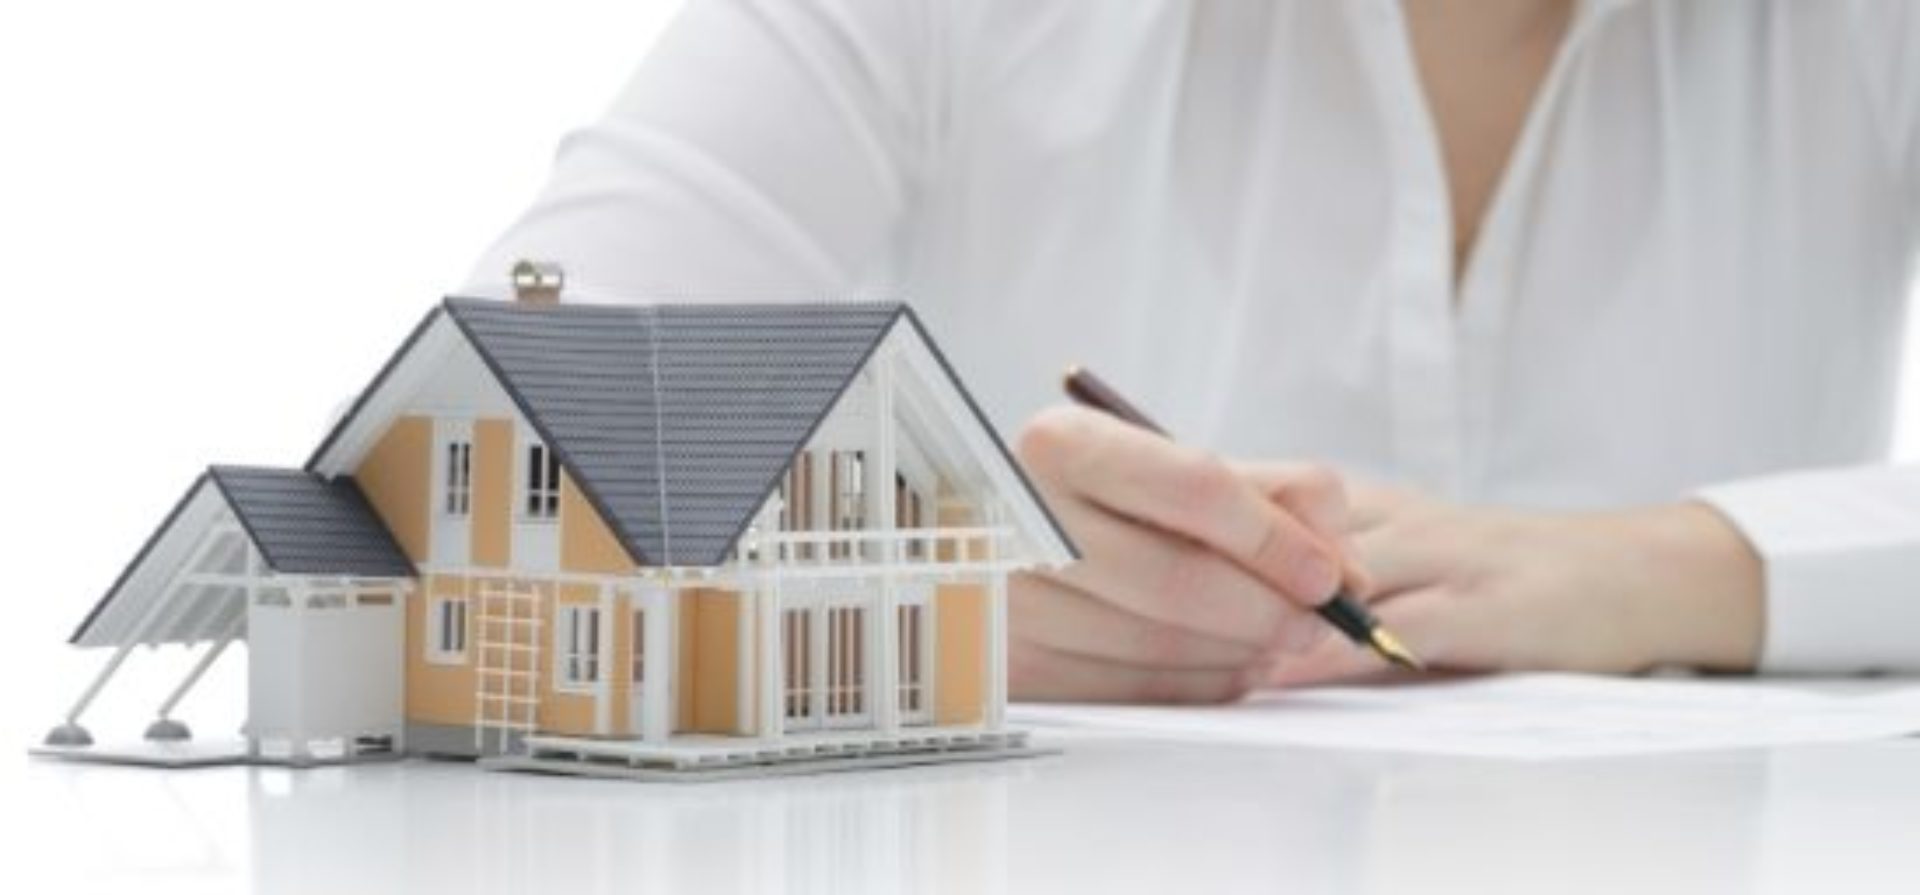 hipoteca autoconstruccion prestamo autopromocion credito